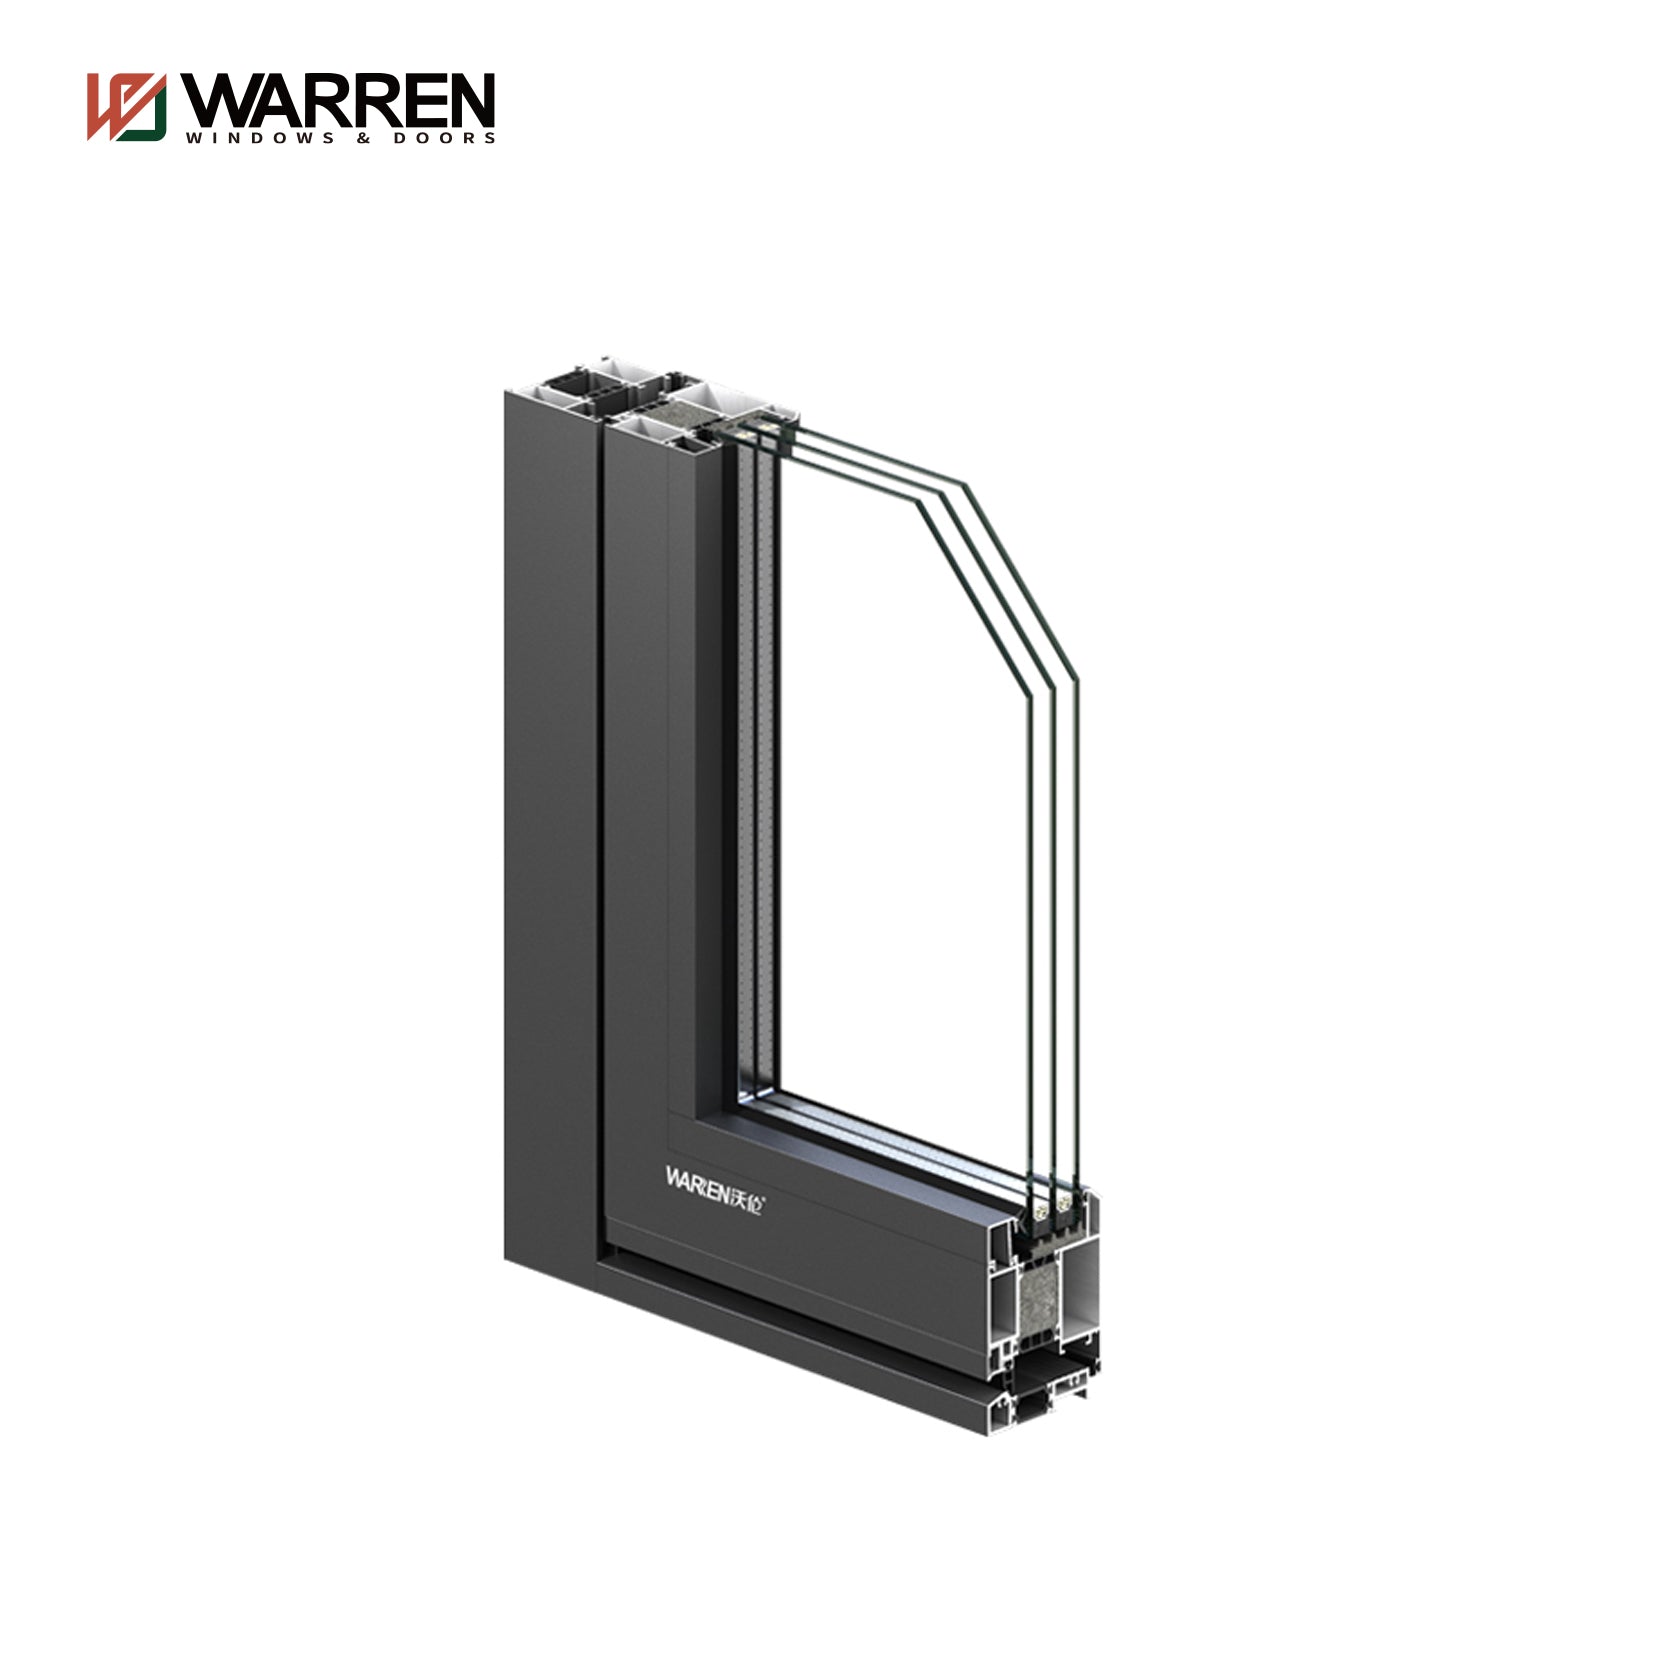 Warren 72 Inch Double French Door Contemporary Exterior Half Glass Doors